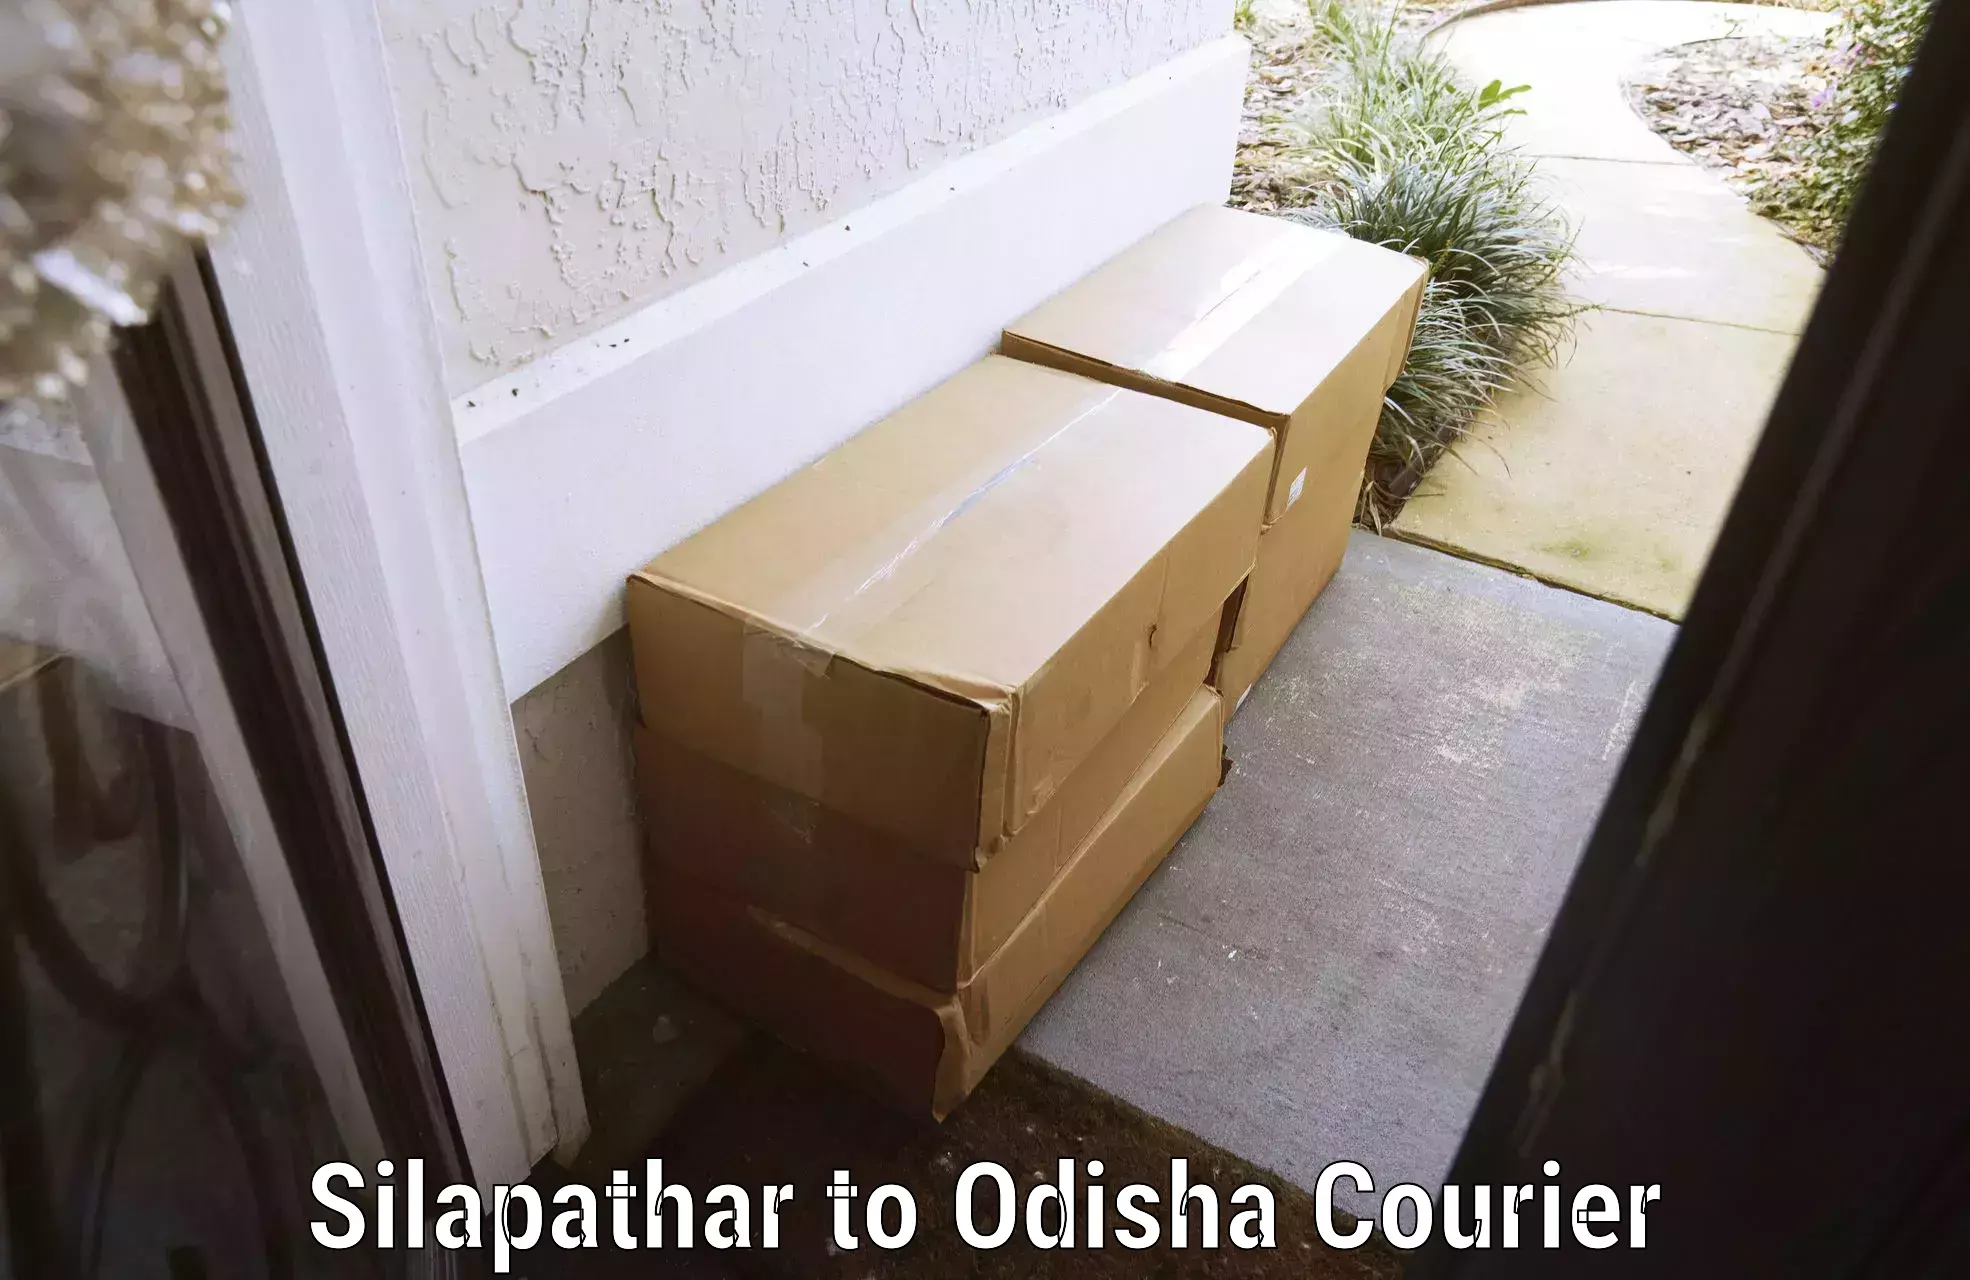 Baggage shipping experts Silapathar to Dunguripali